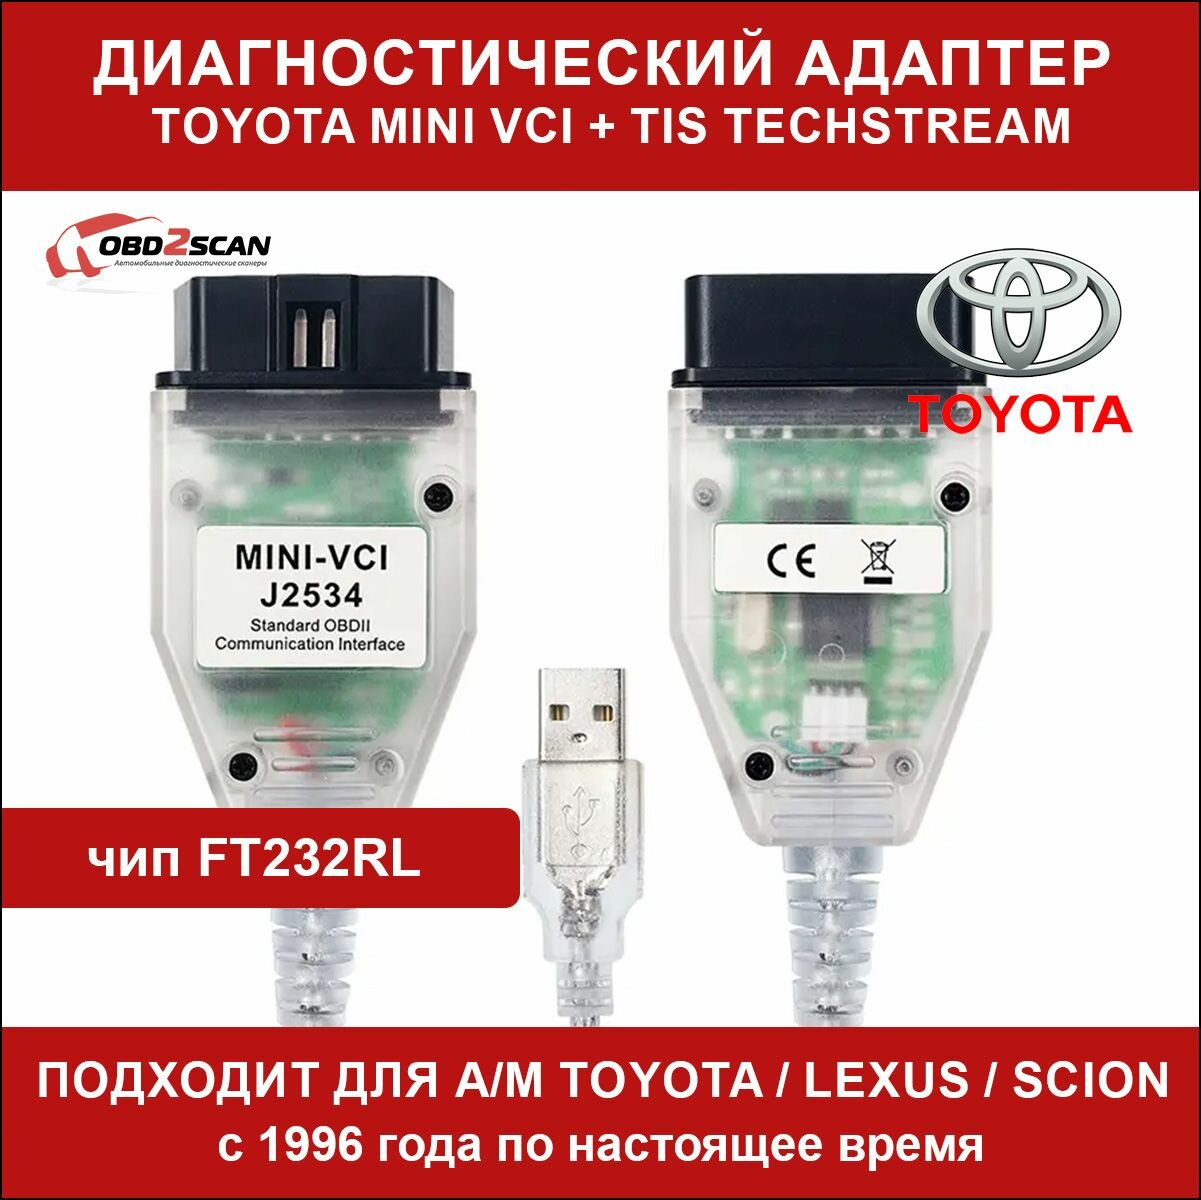 Адаптер диагностический Toyota Mini VCI TIS Techstream